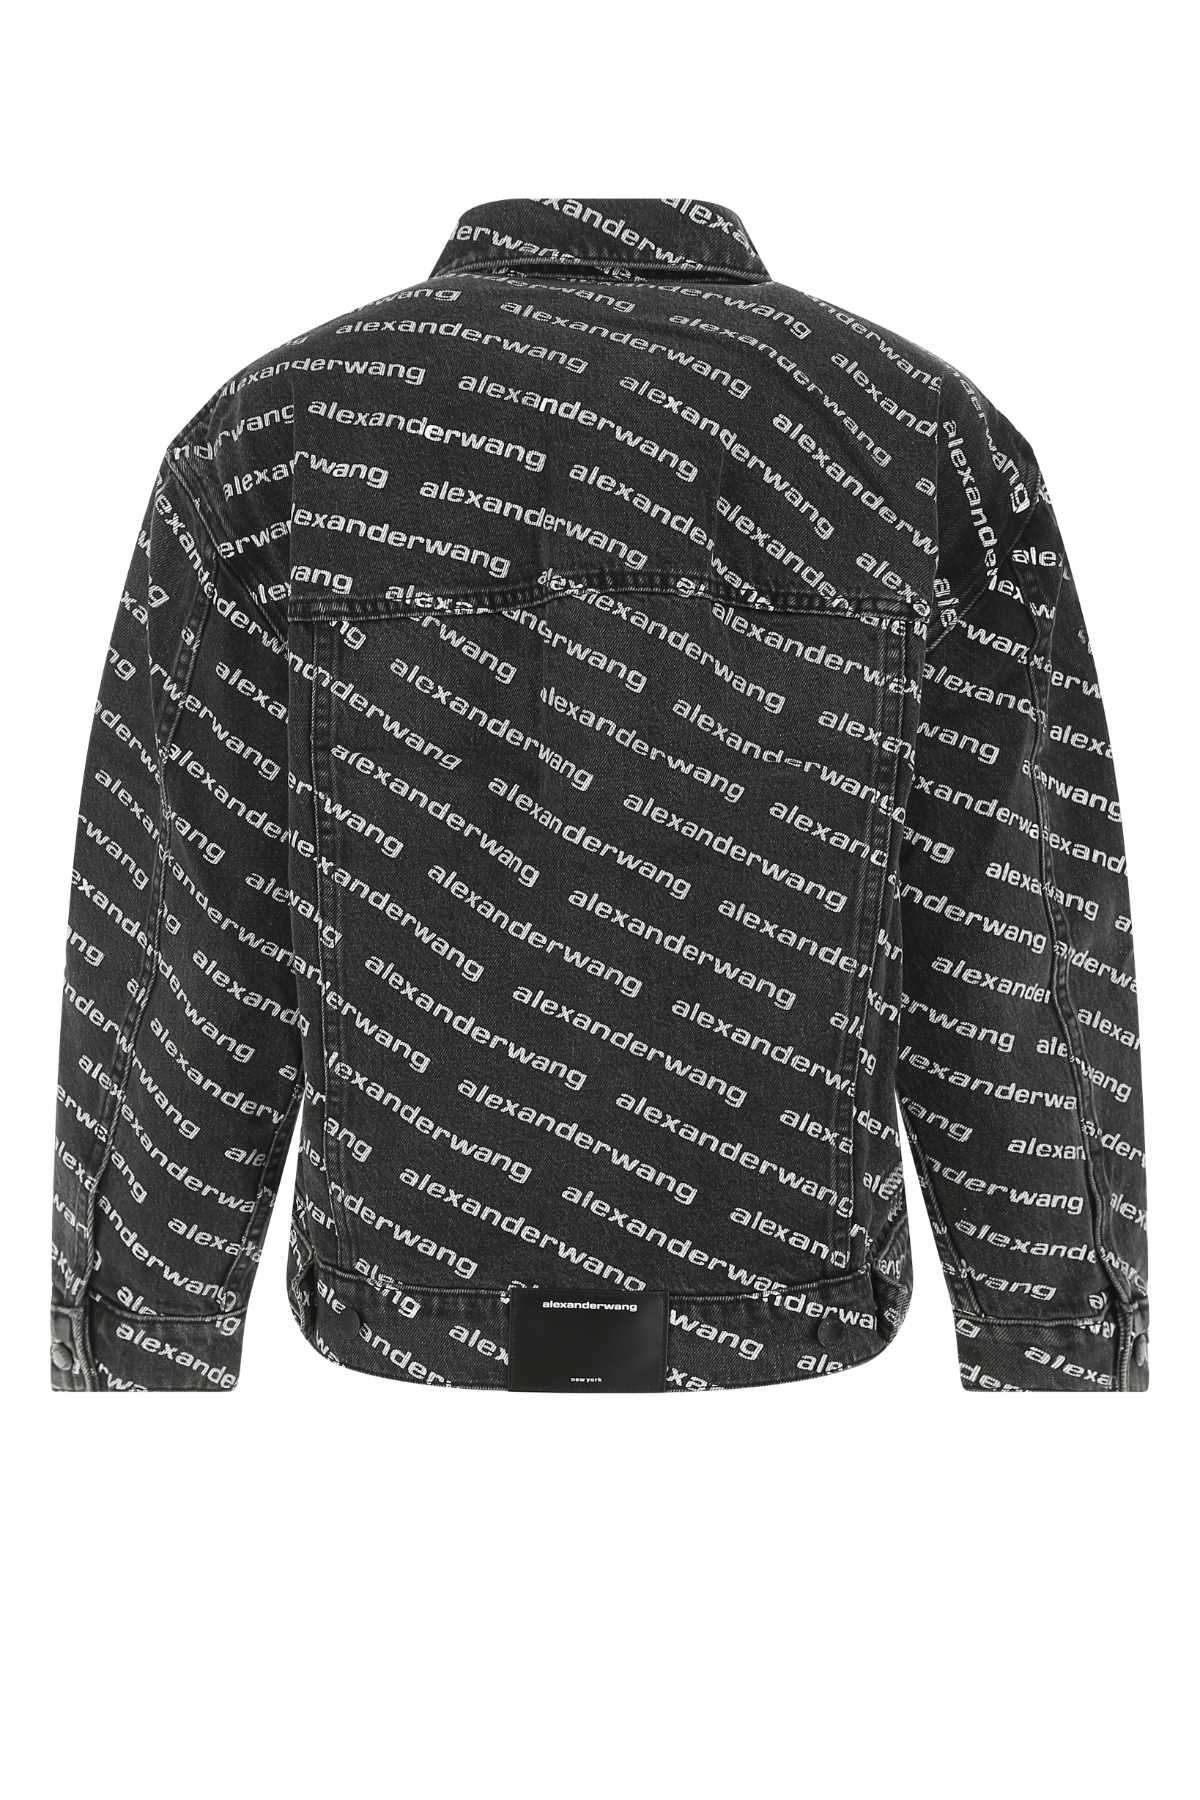 Alexander Wang Printed Denim Jacket In Greyagedwhite